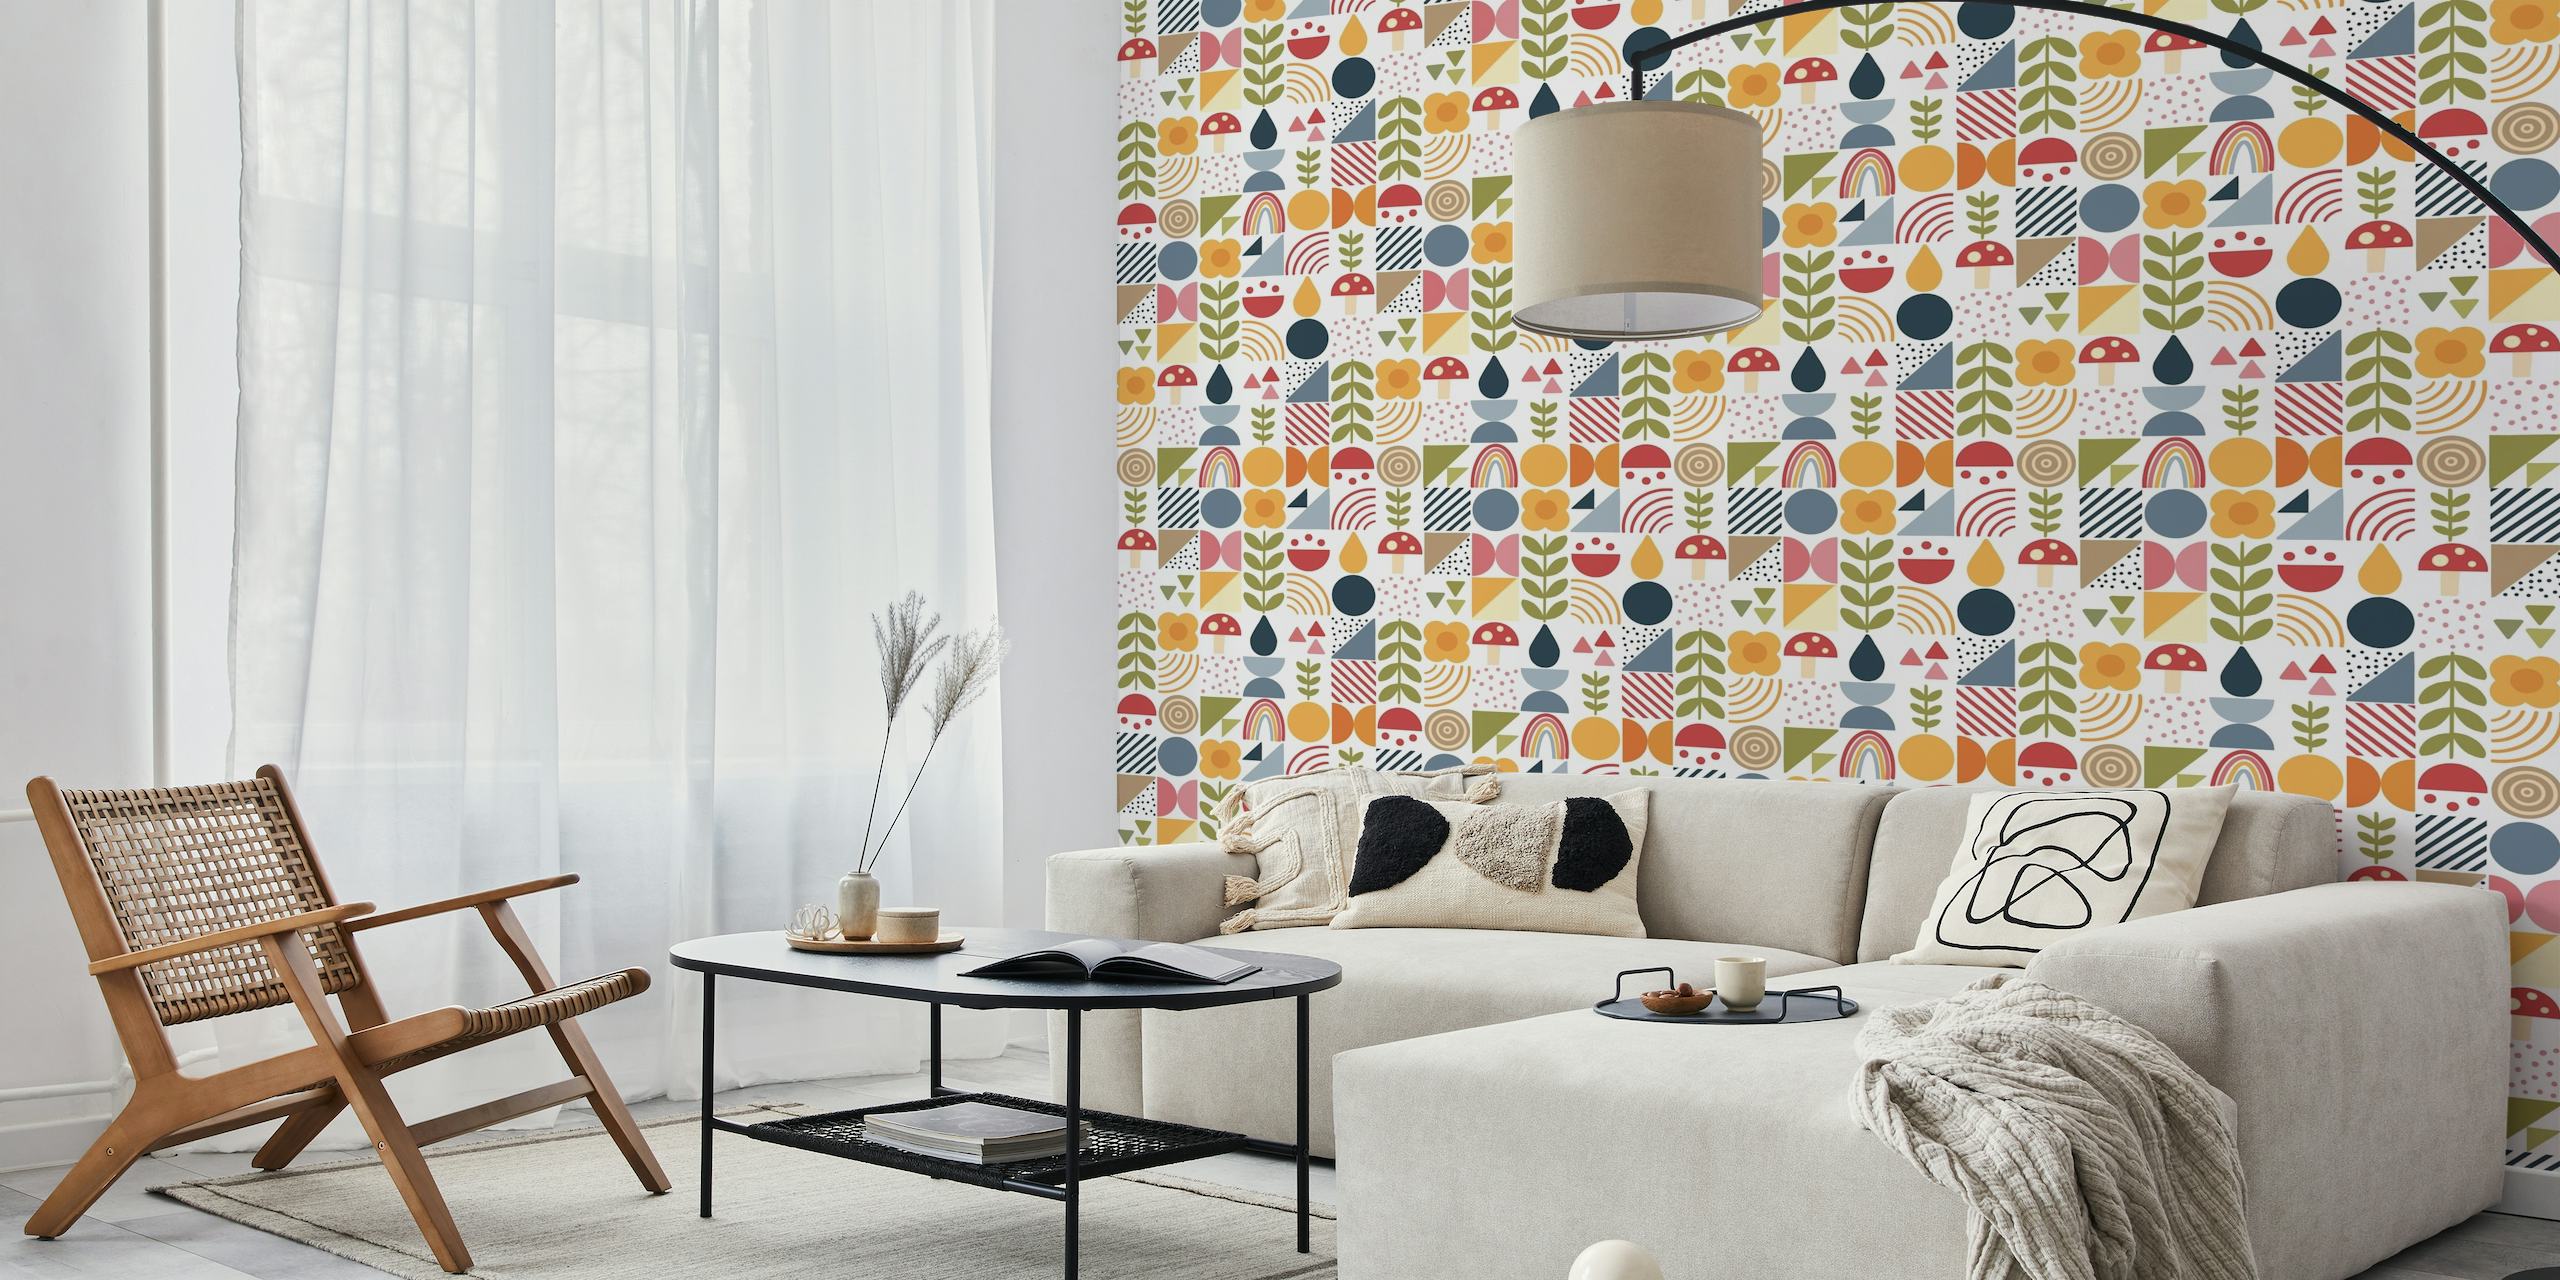 Fotomural vinílico de parede de formas geométricas e orgânicas estilizadas com padrões coloridos